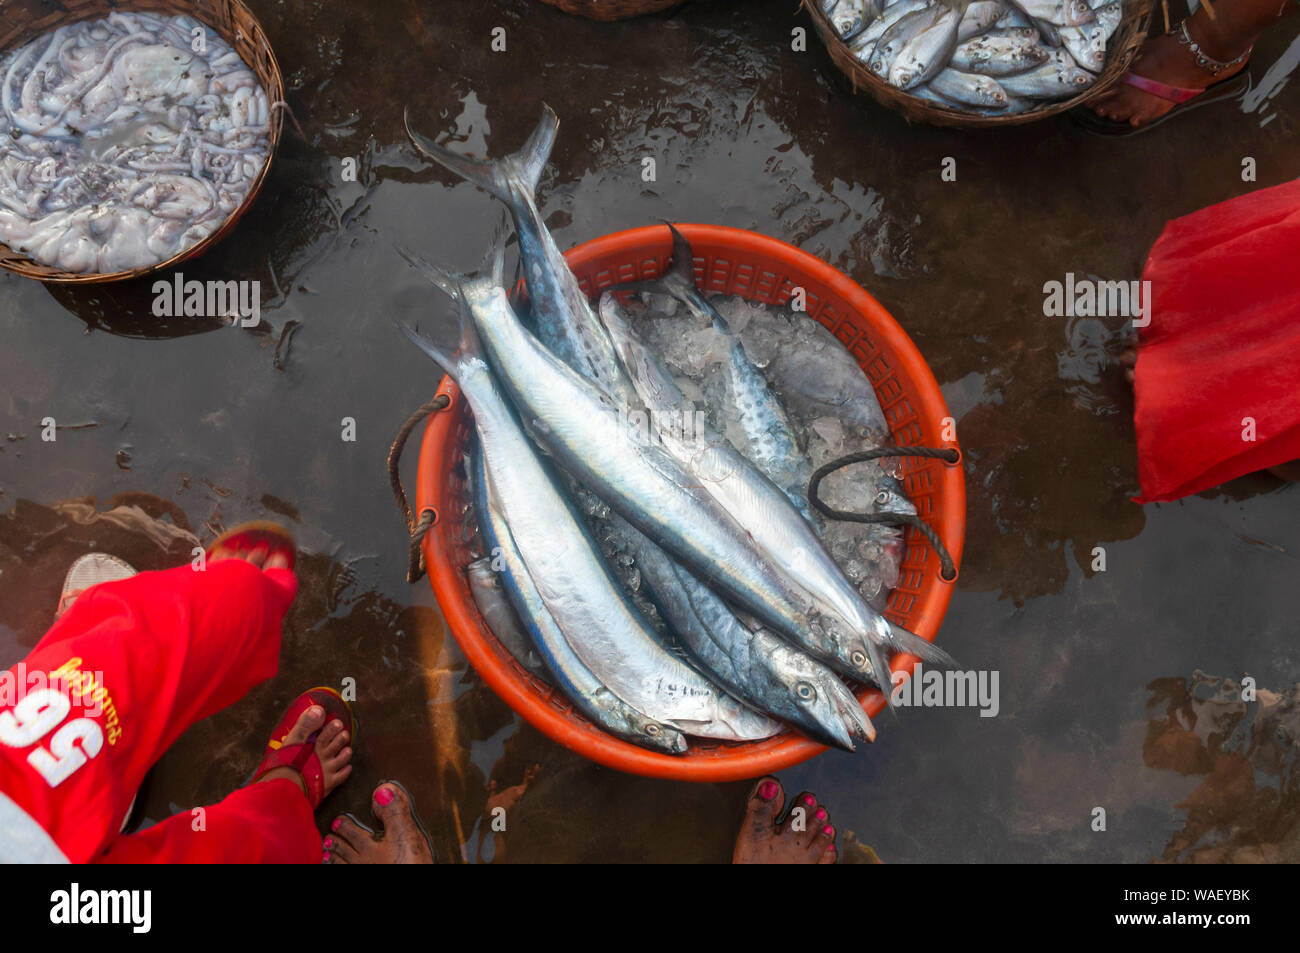 Frische Fische fangen, Harney Jetty, Ratnagiri, Maharashtra, Indien. Stockfoto